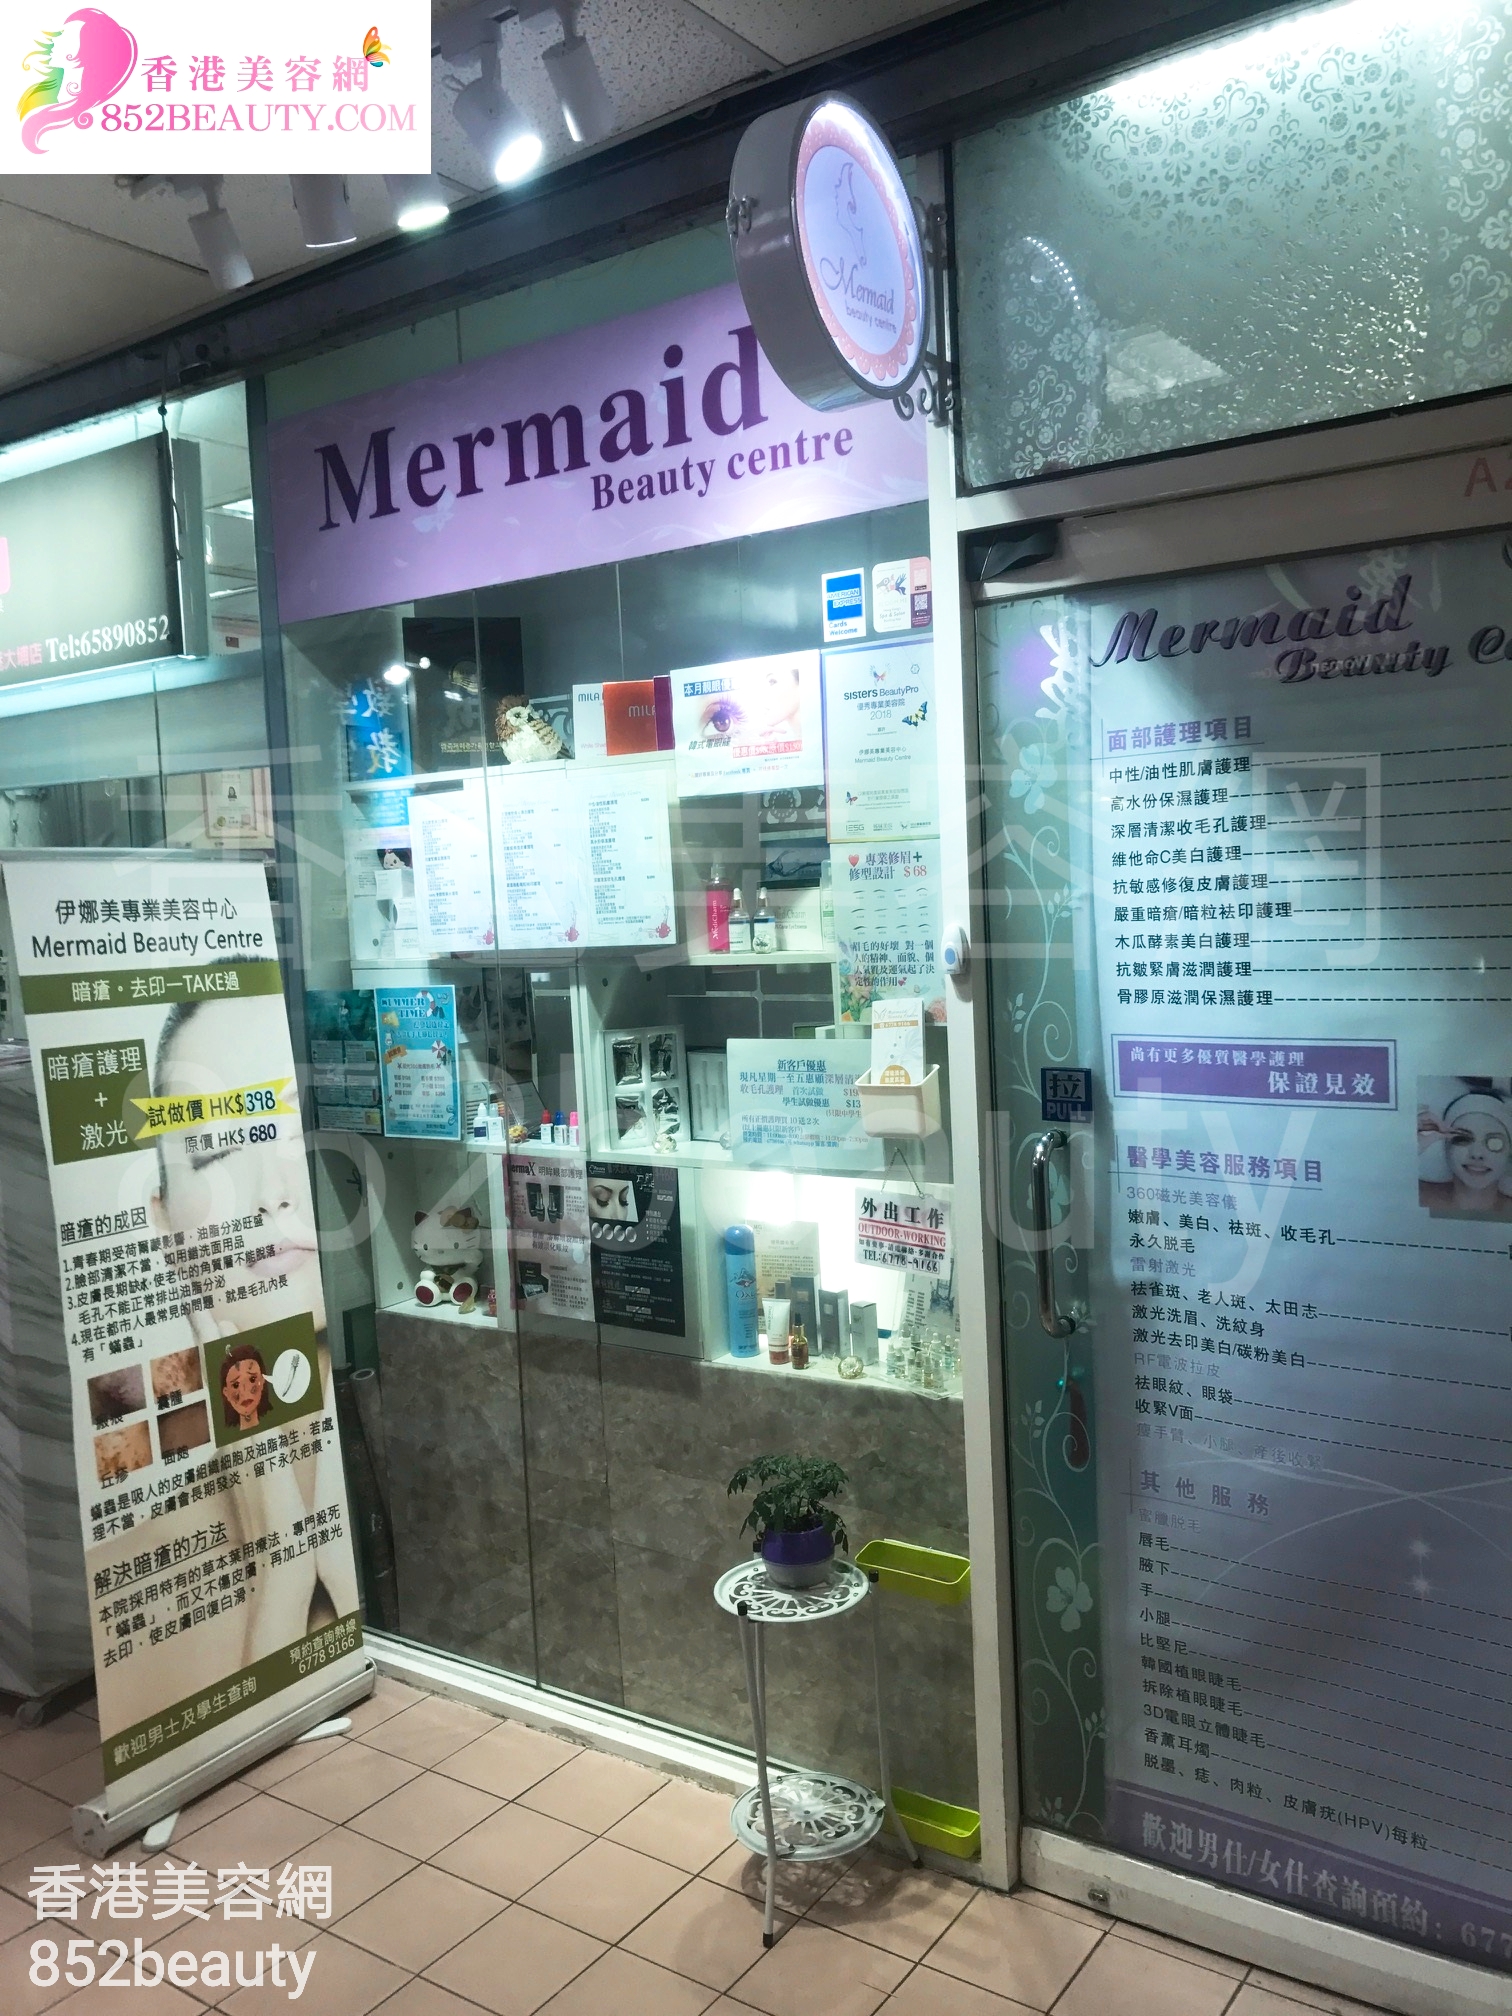 醫學美容: 伊娜美專業美容中心 Mermaid Beauty Centre